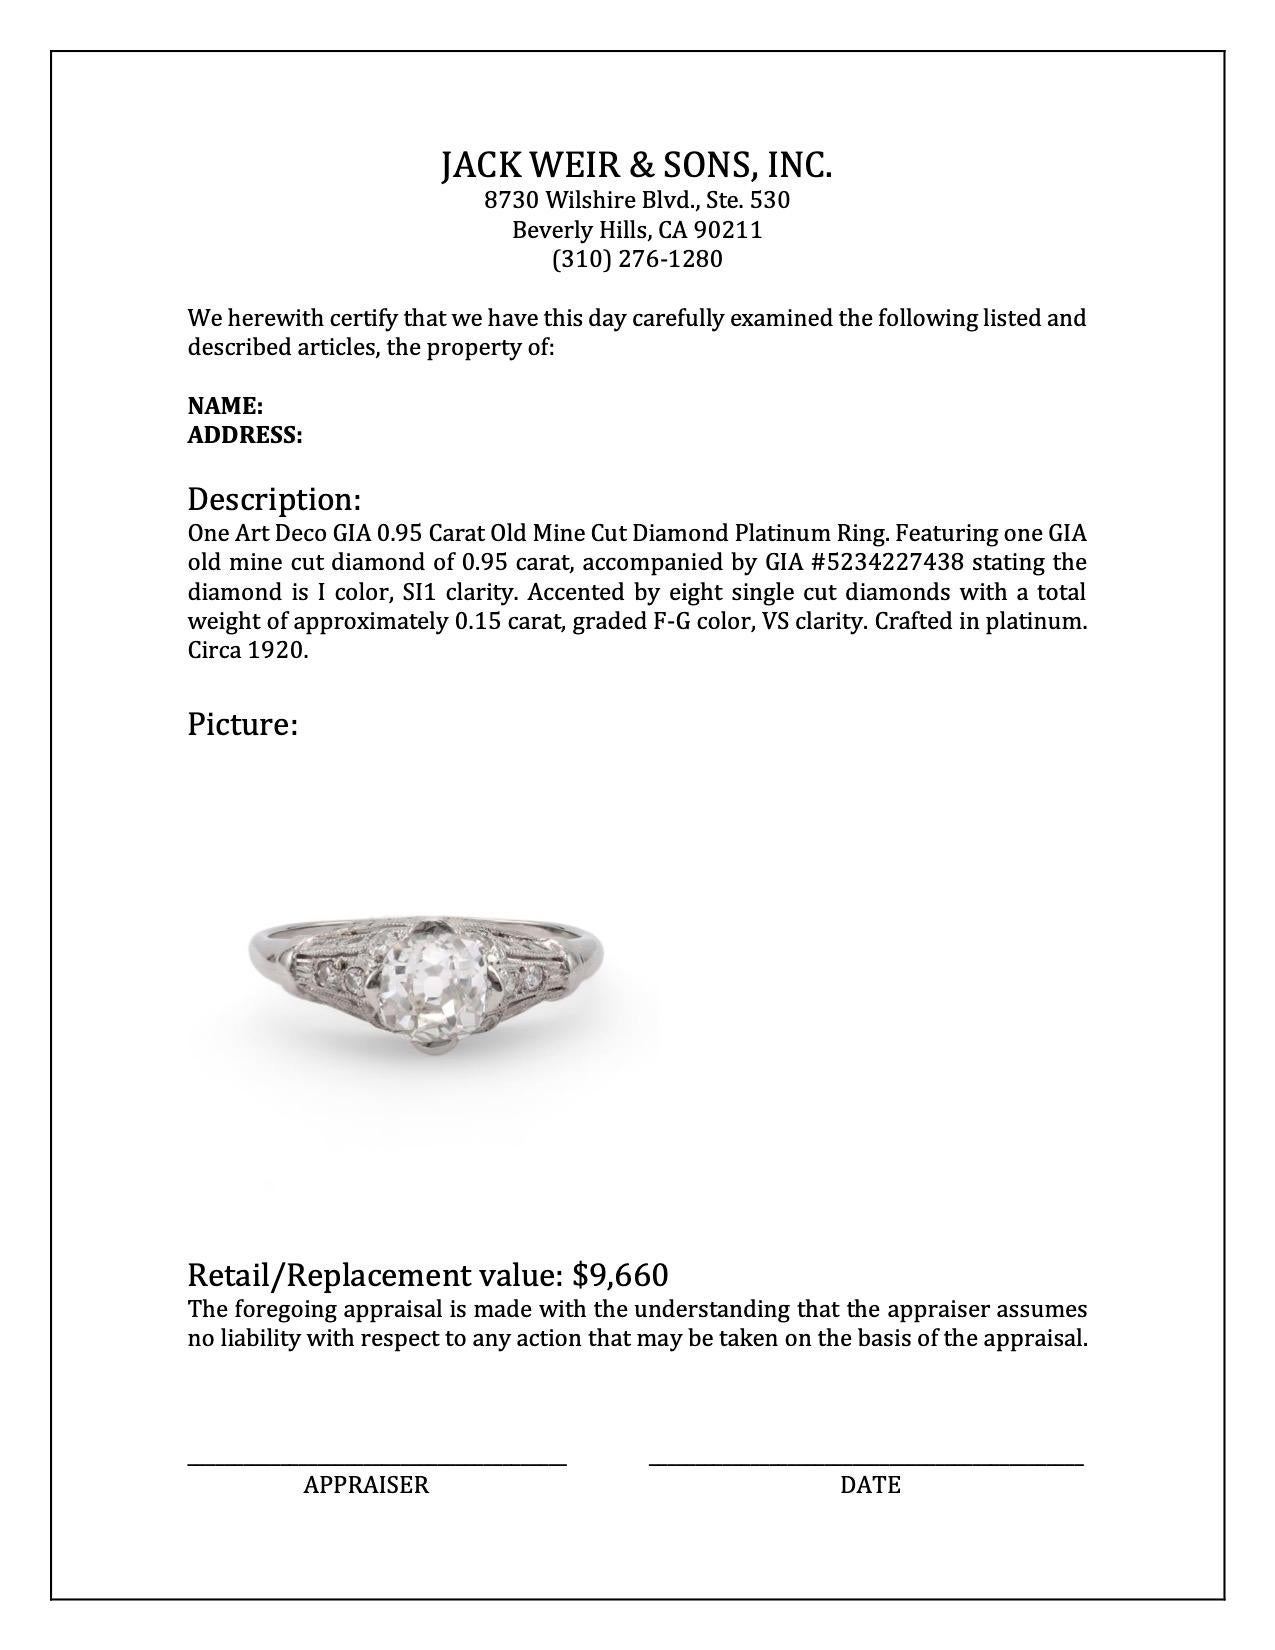 Art Deco GIA 0.95 Carat Old Mine Cut Diamond Platinum Ring 1